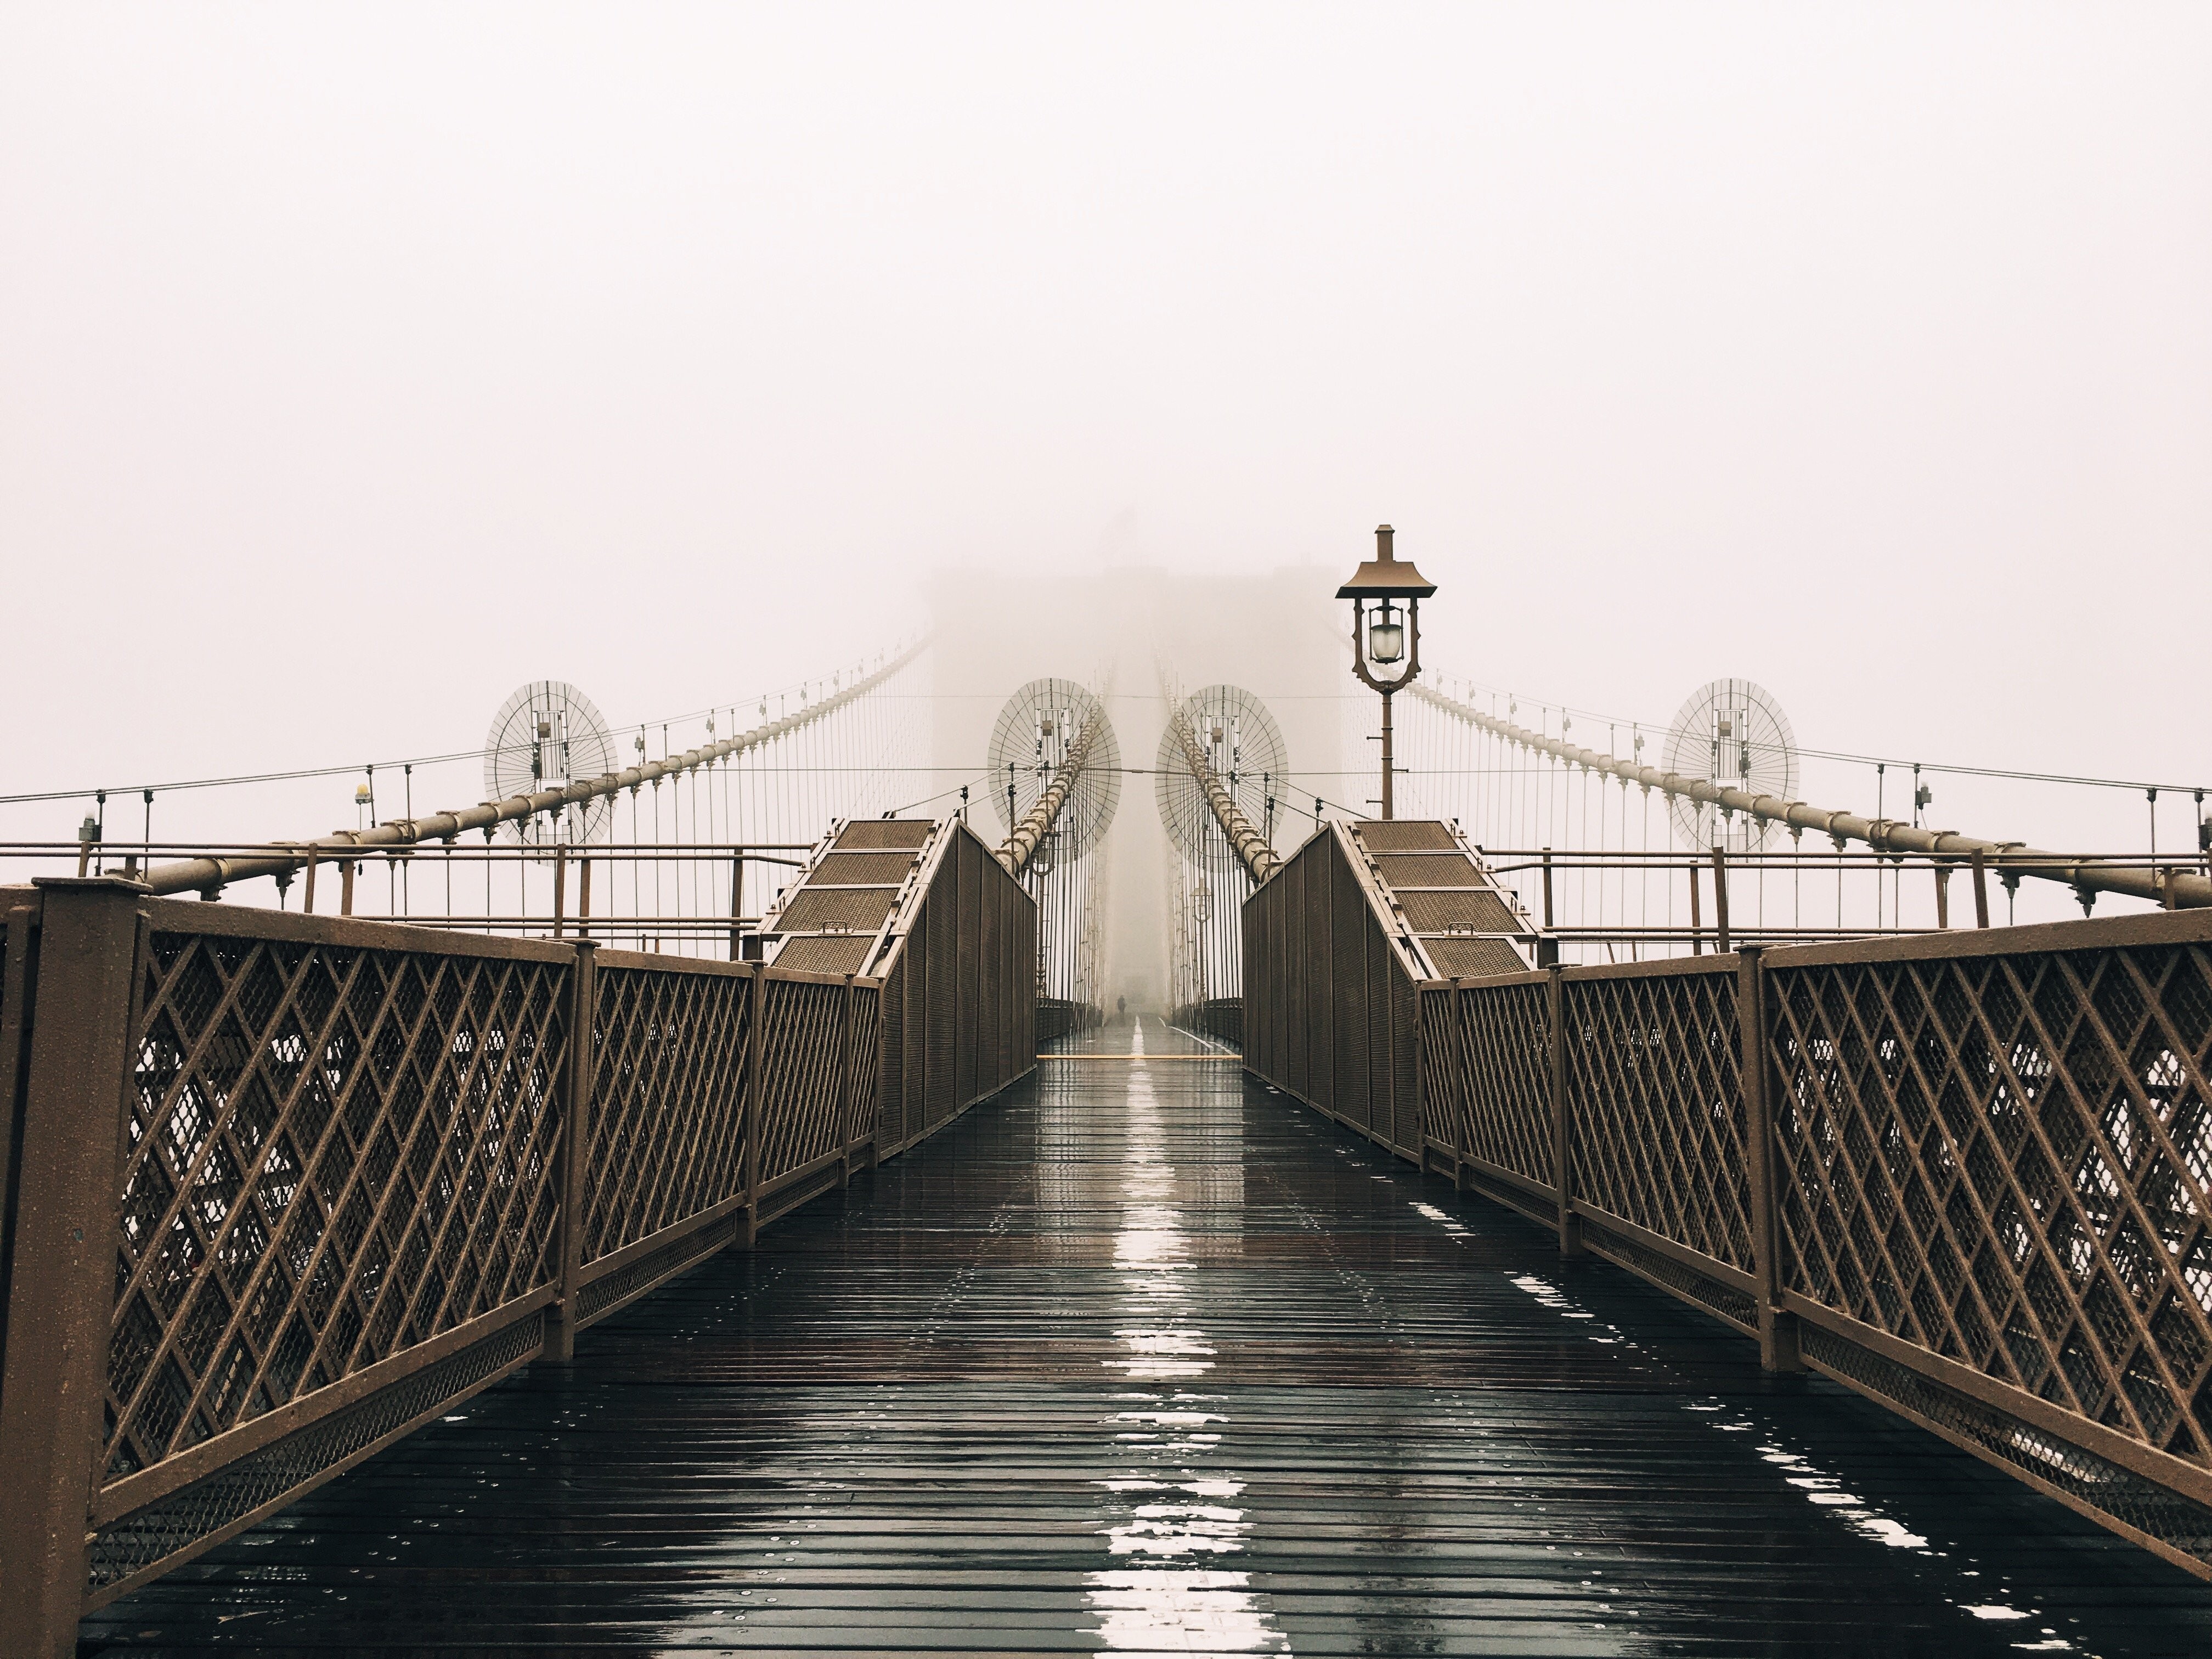 Un pont mouillé couvert de brouillard Photo